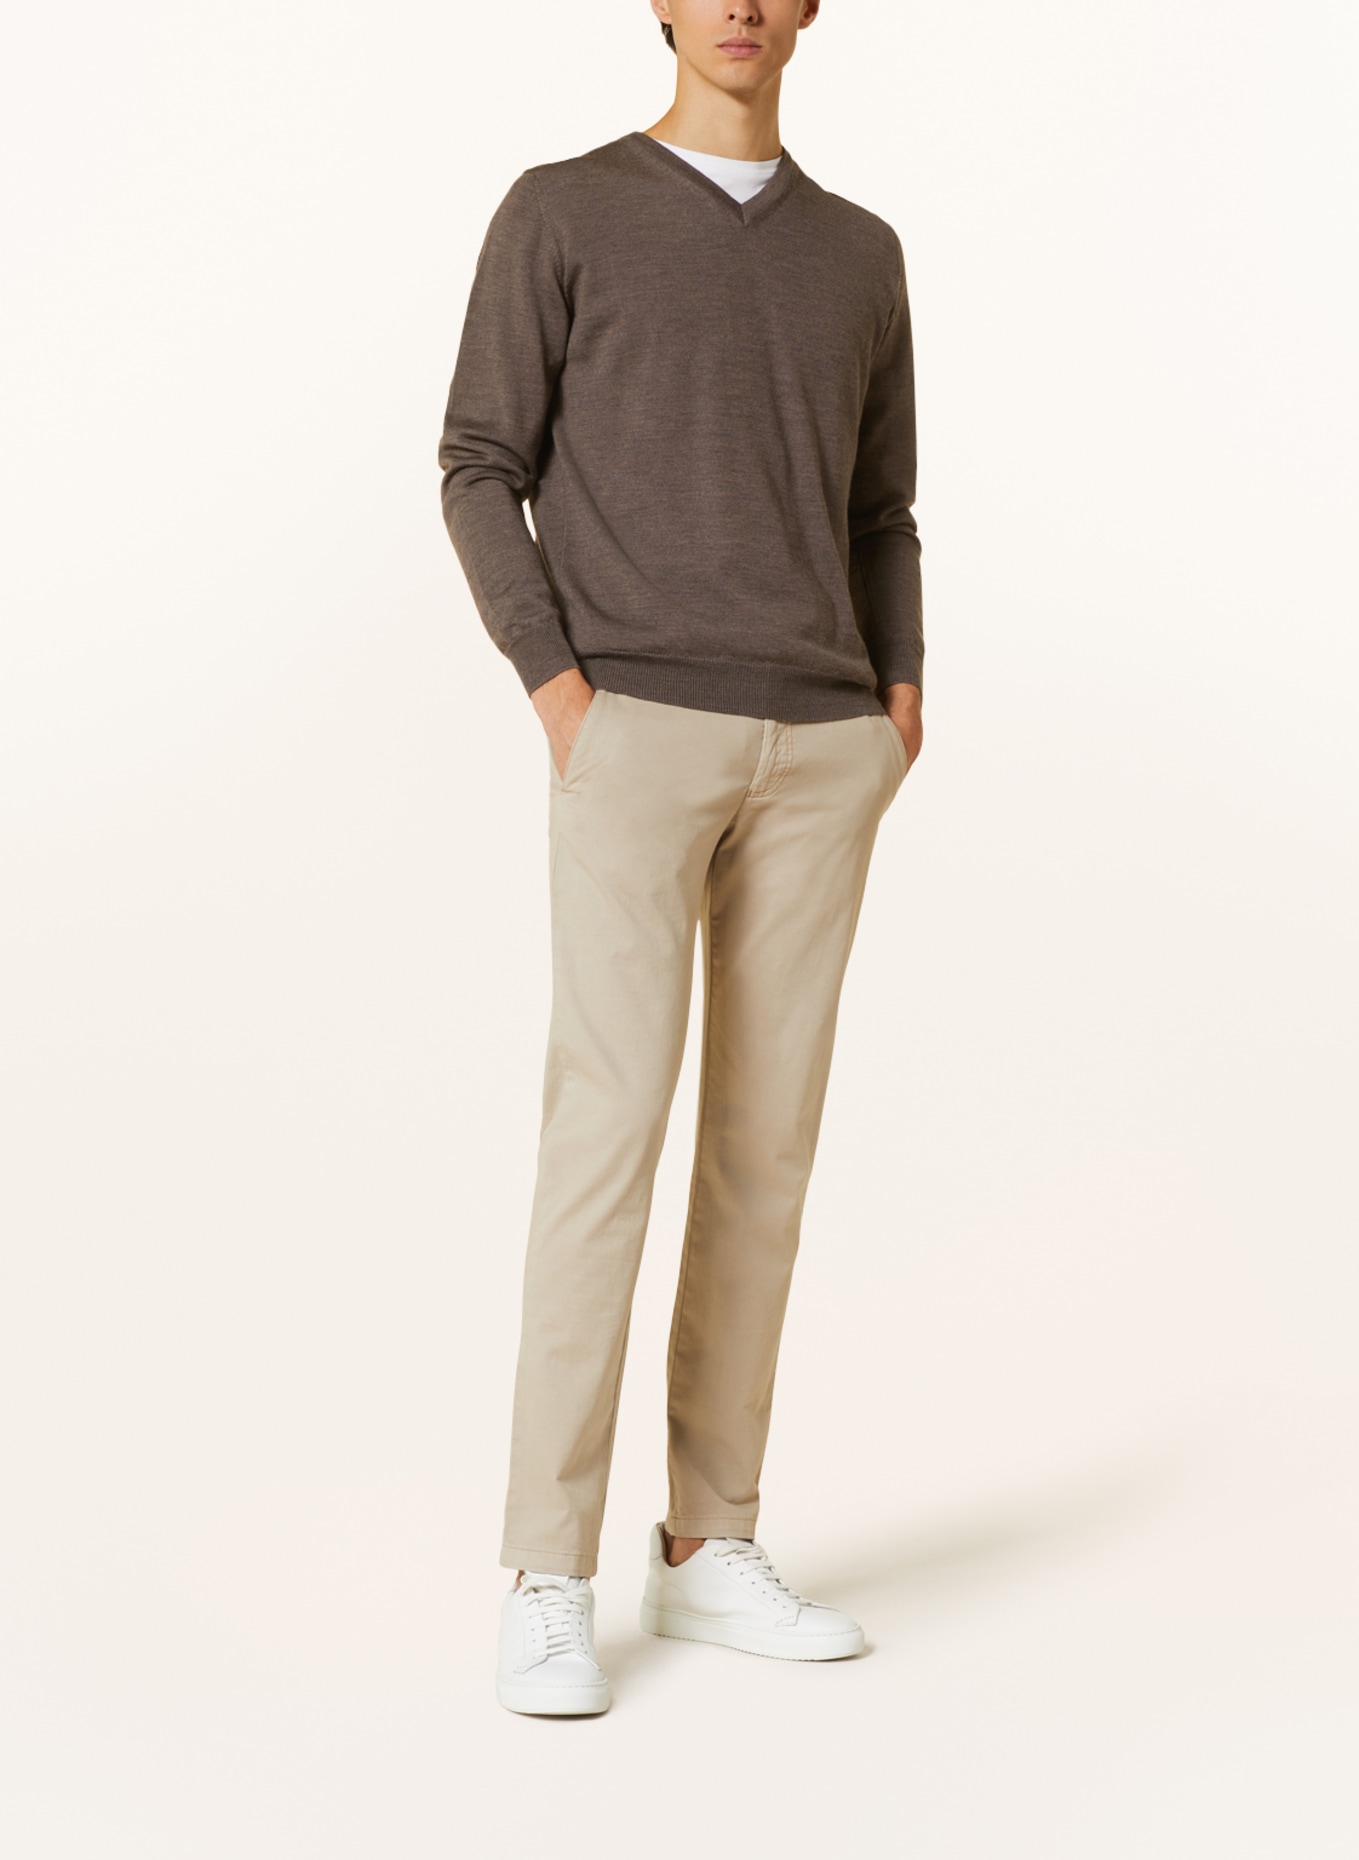 EDUARD DRESSLER Sweater, Color: BROWN (Image 2)